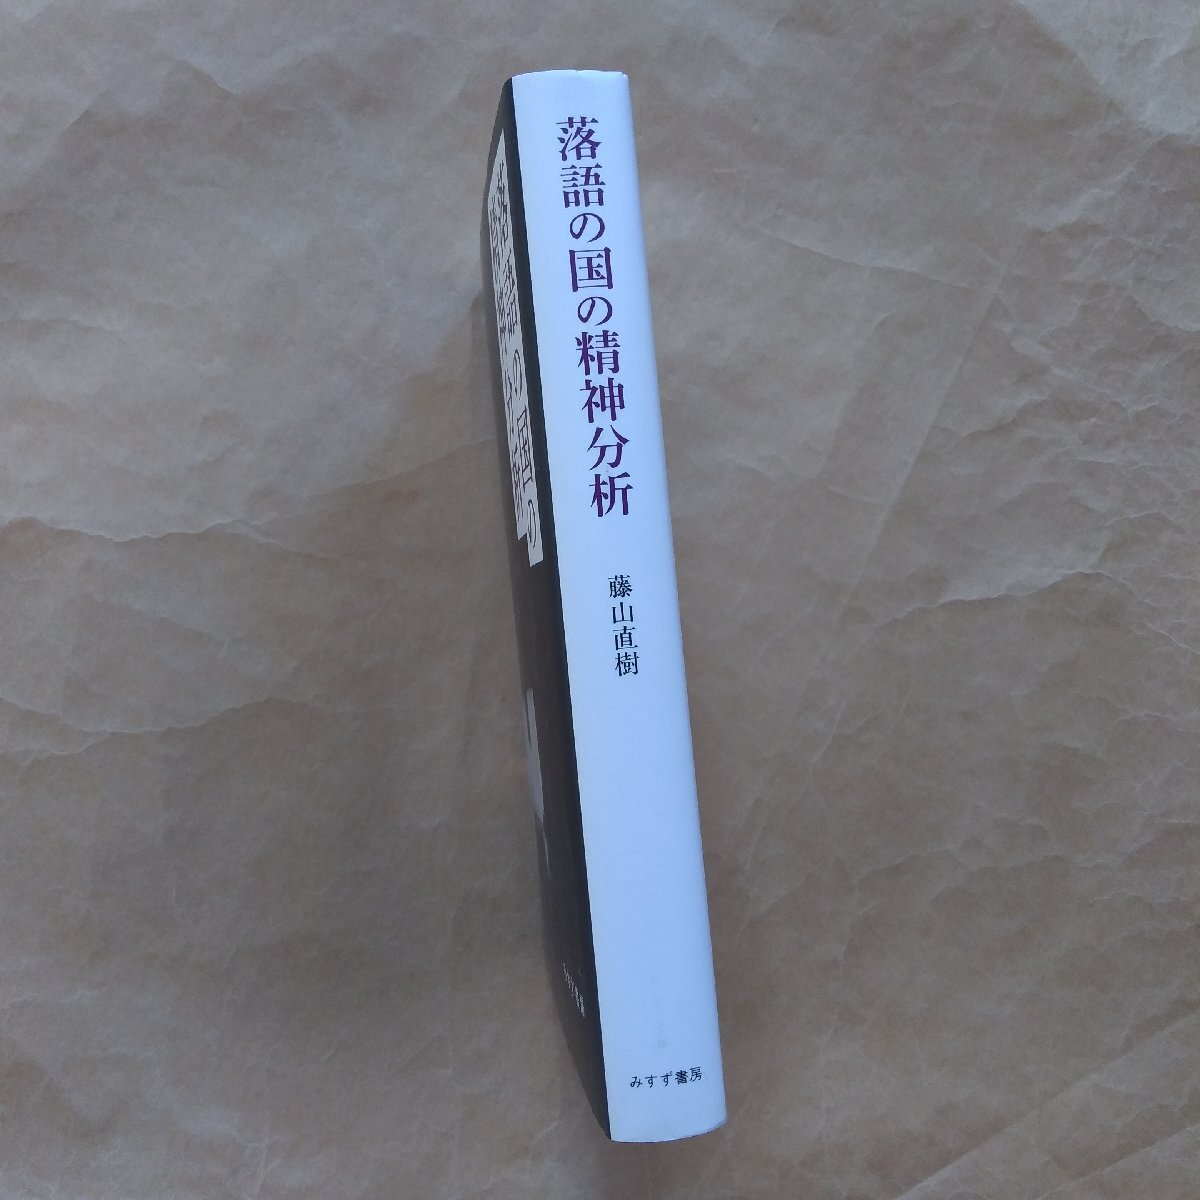 * комические истории. страна. . бог анализ глициния гора Naoki ... книжный магазин обычная цена 2860 иен 2016 год 